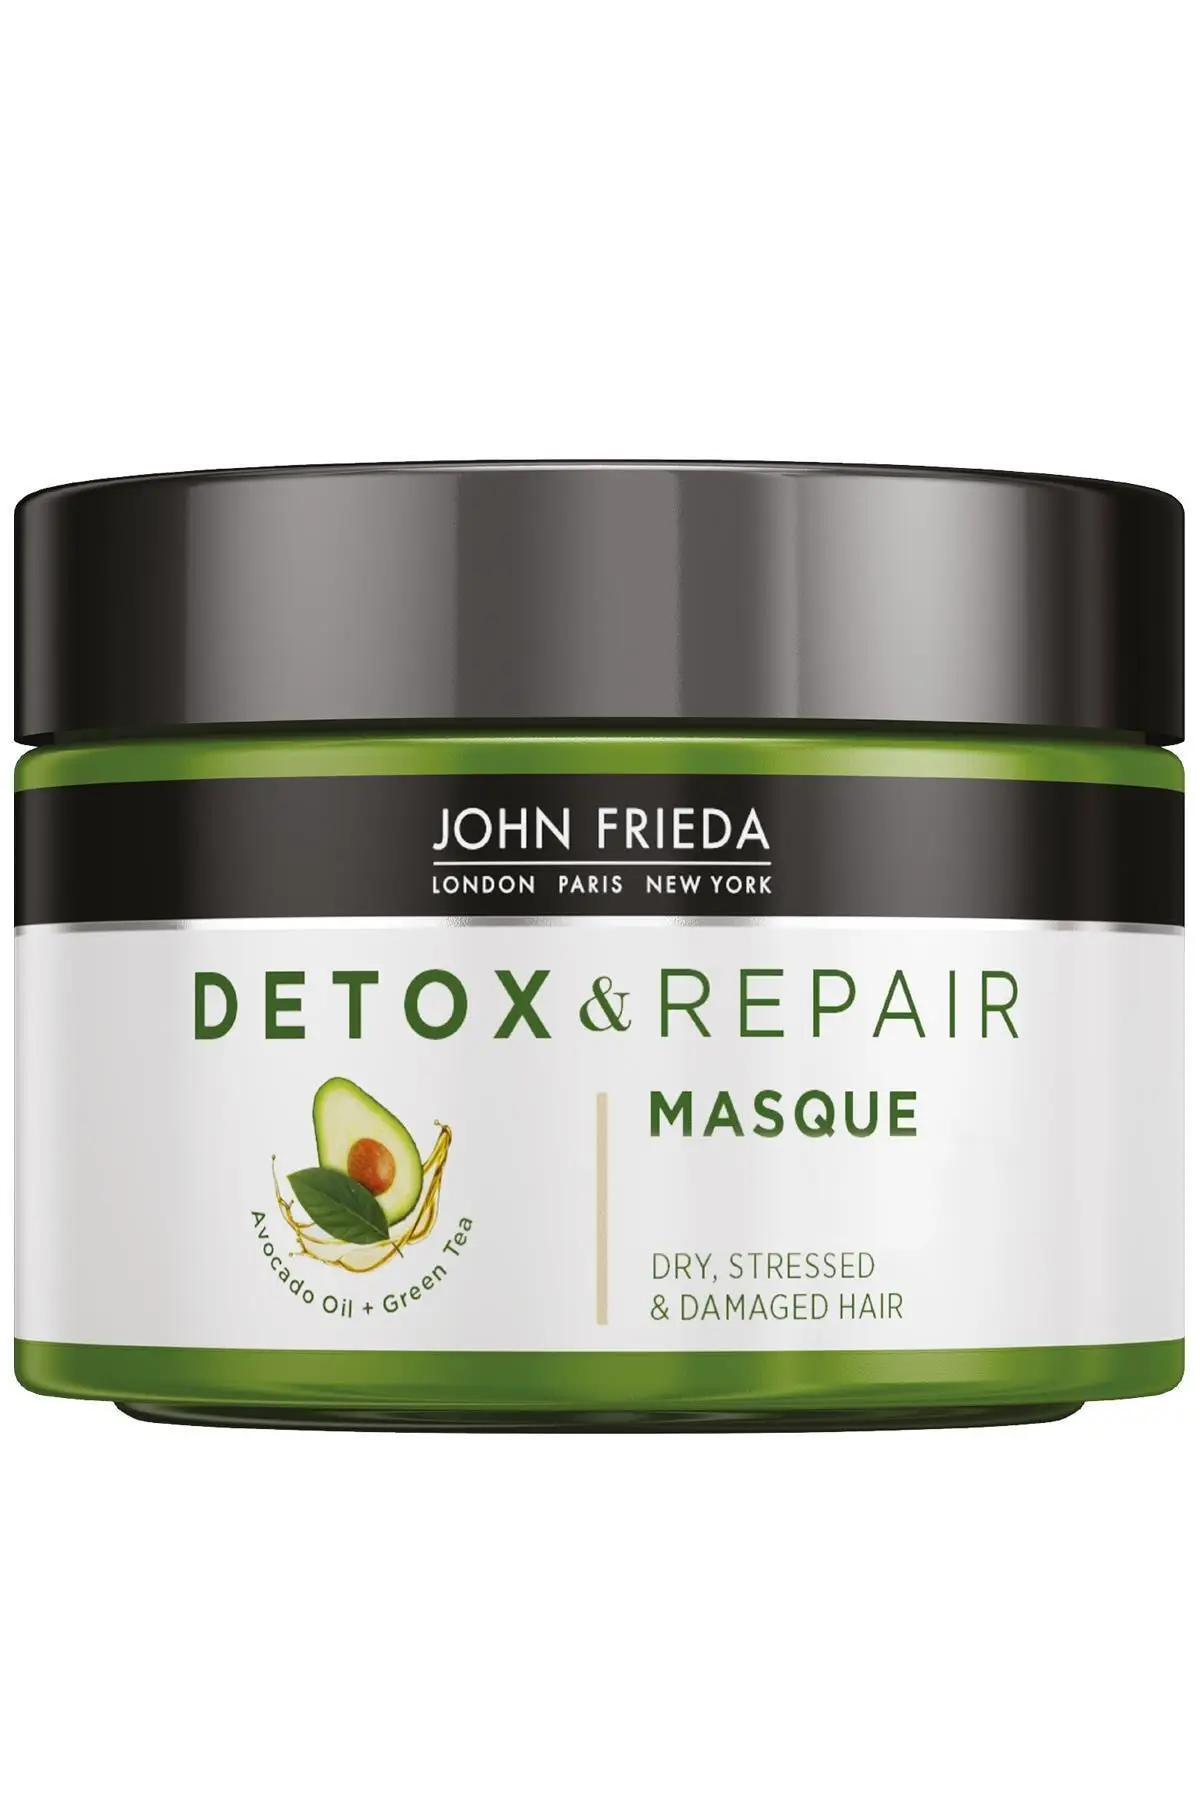 

John Frieda Detox and Repair Masque 250ml